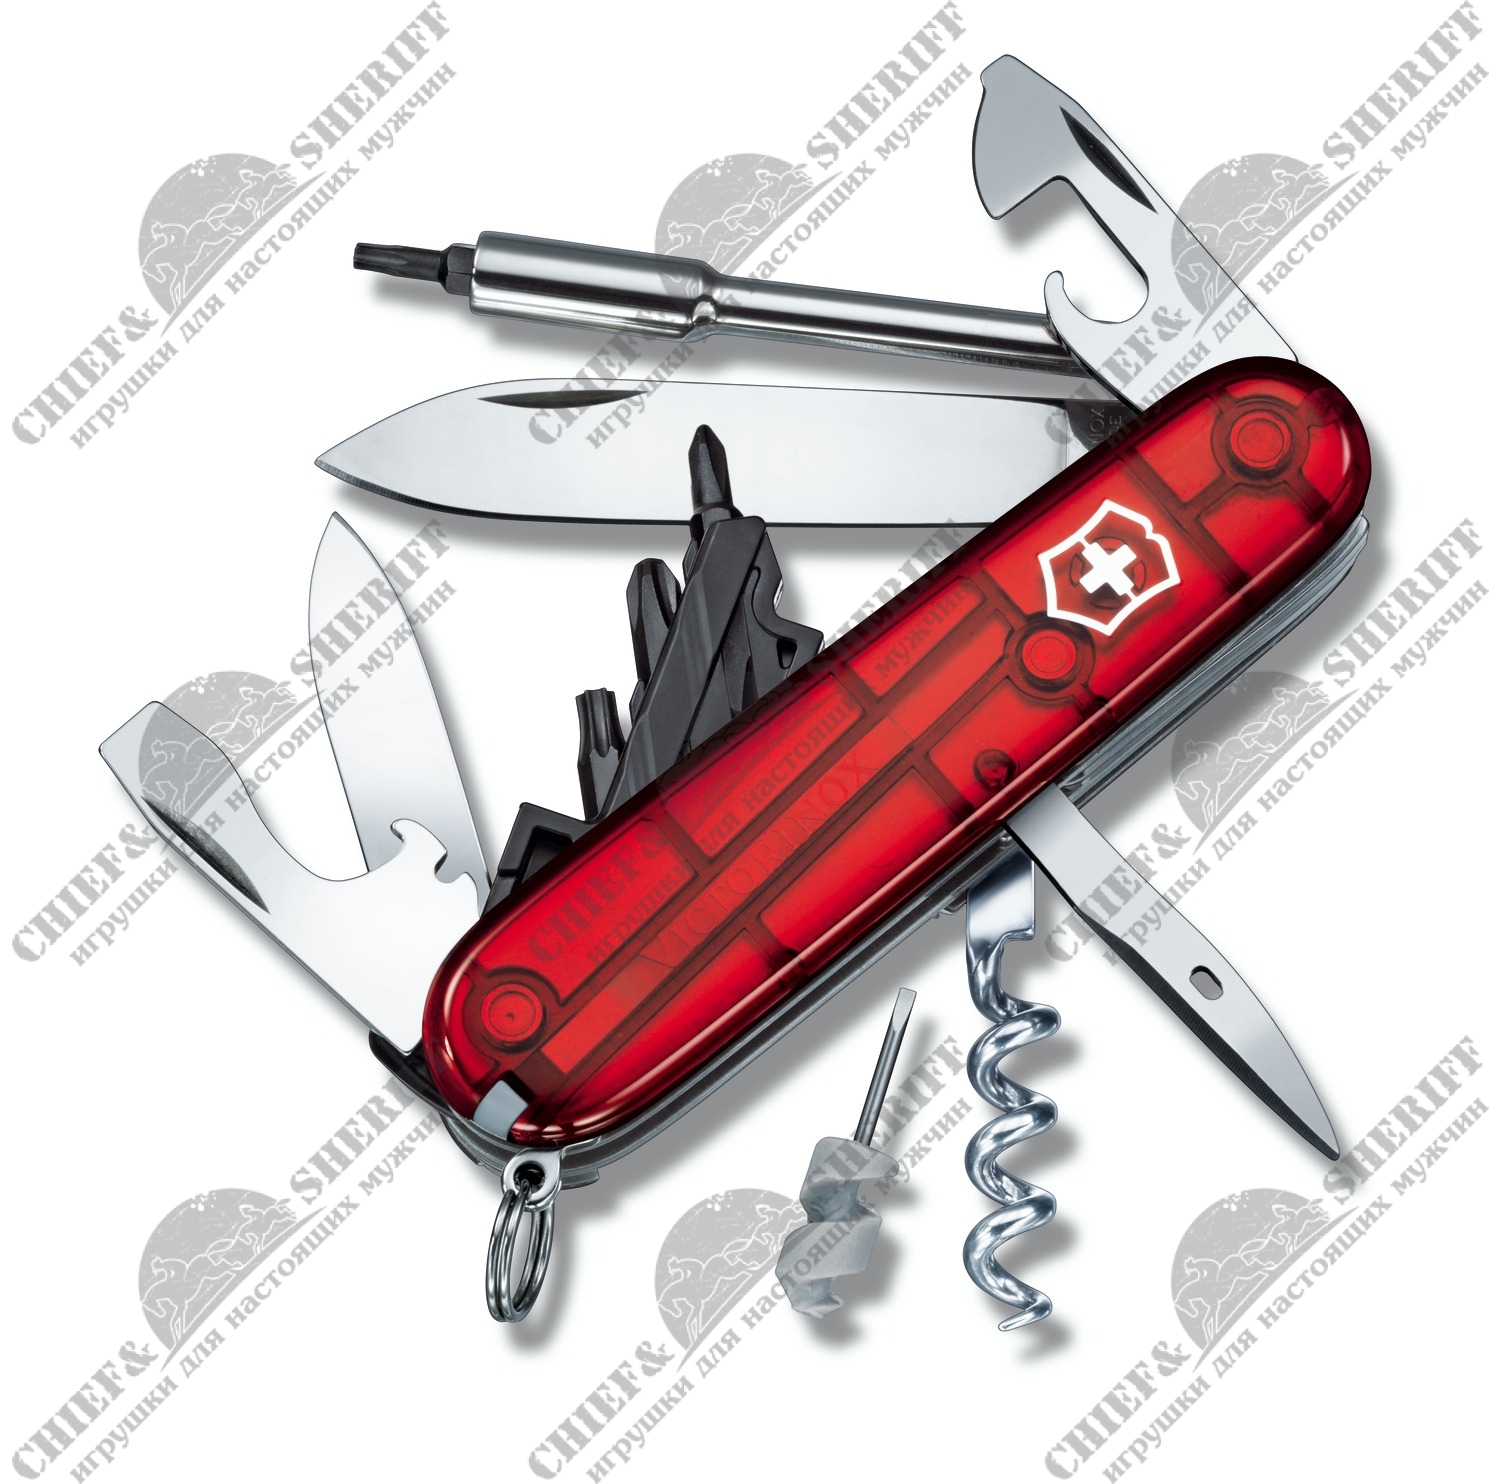 Швейцарский складной нож Victorinox Cybertool 29, 91 мм, 27 функций красный 1.7605.Т